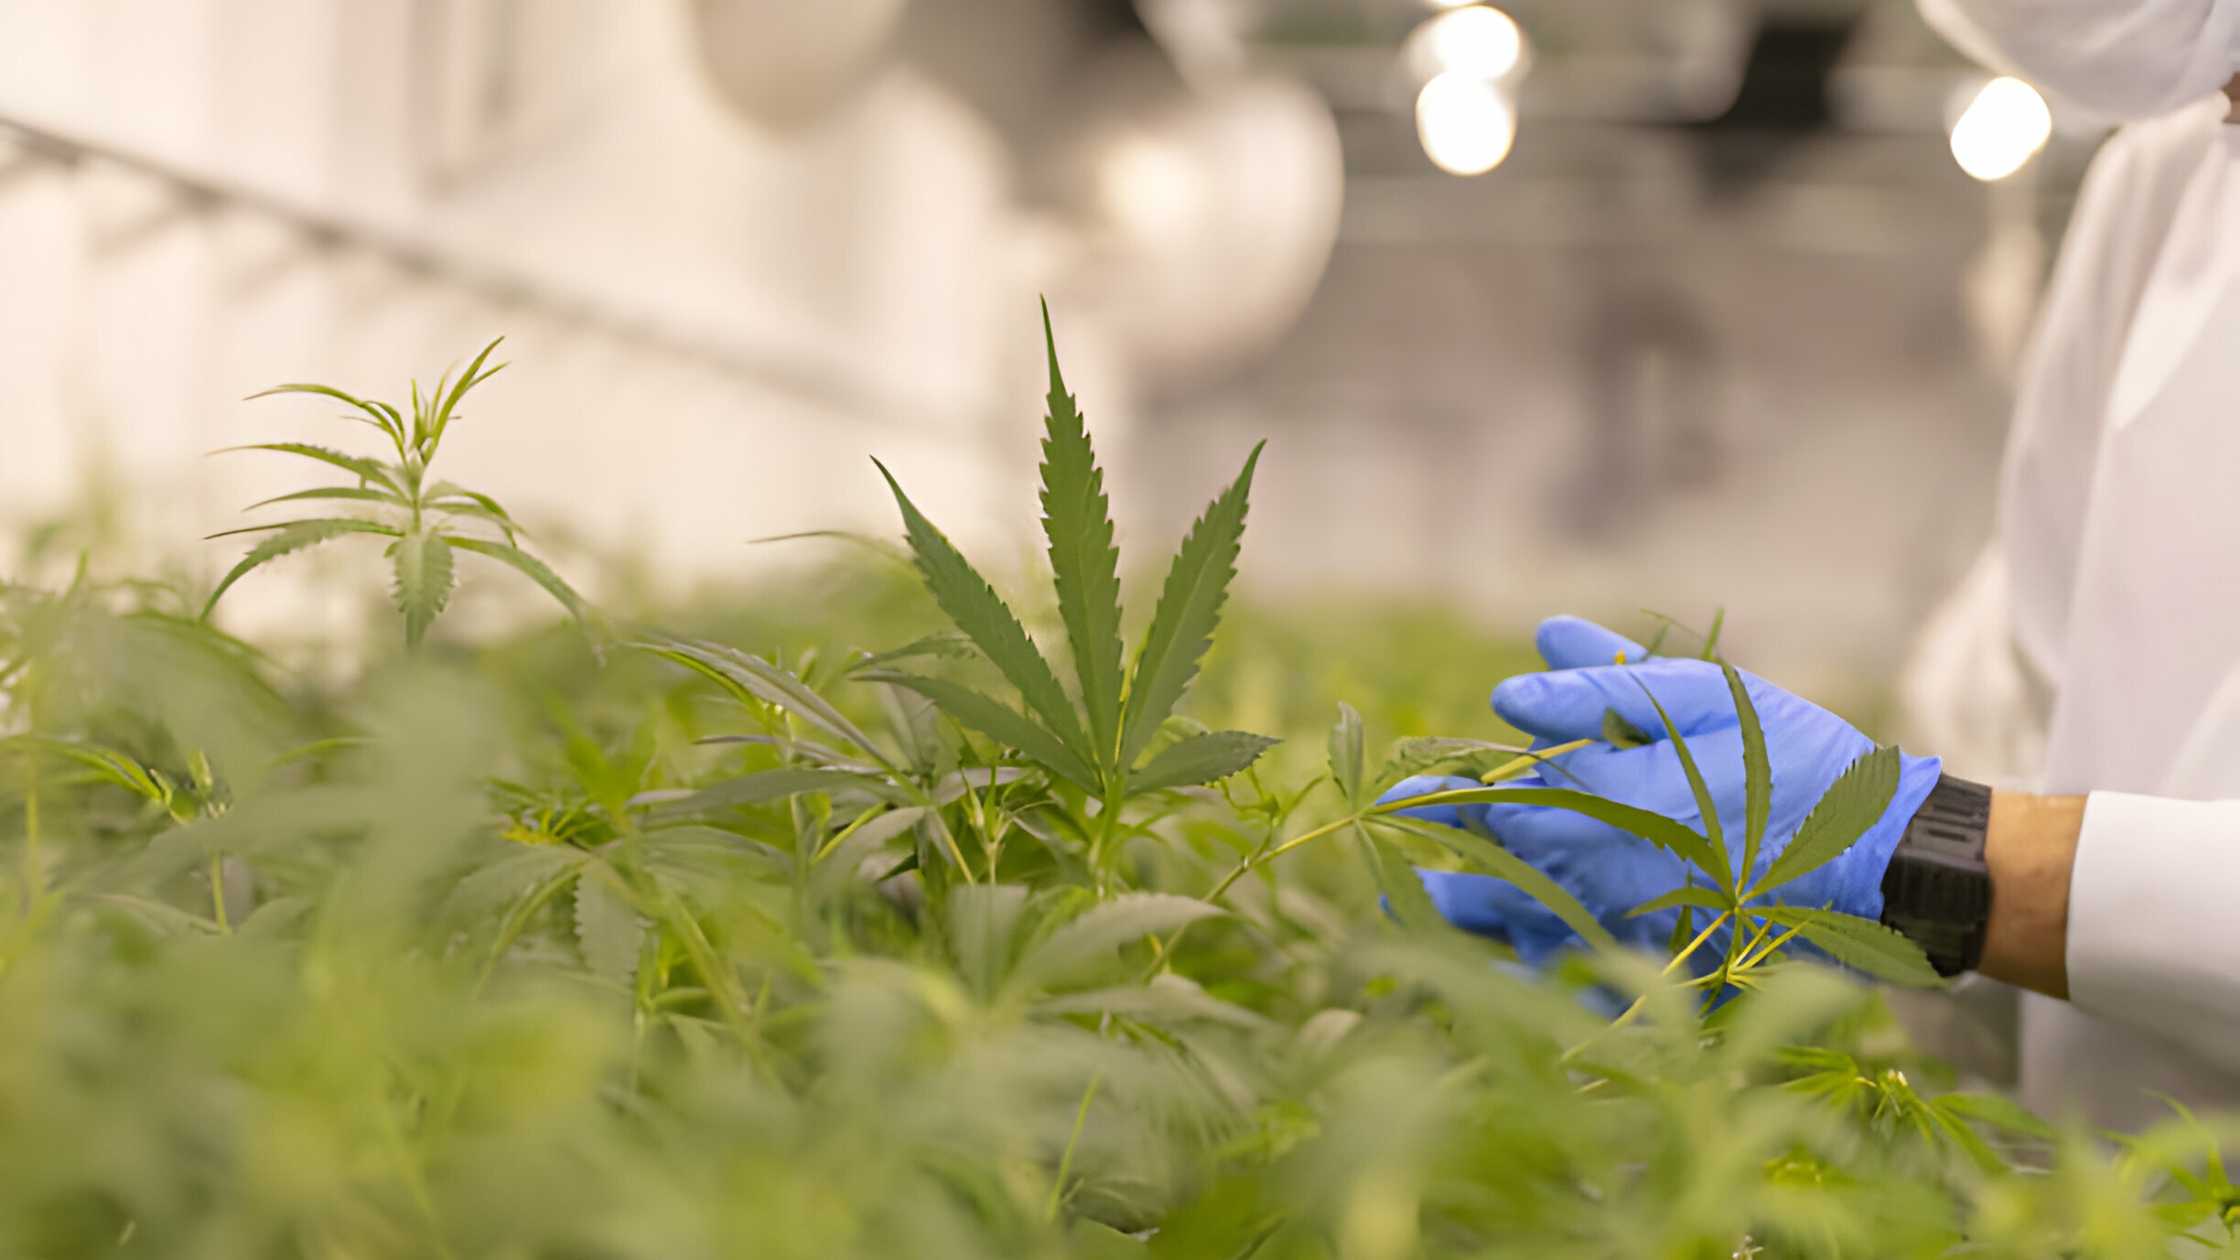 How to Grow Legal Cannabis